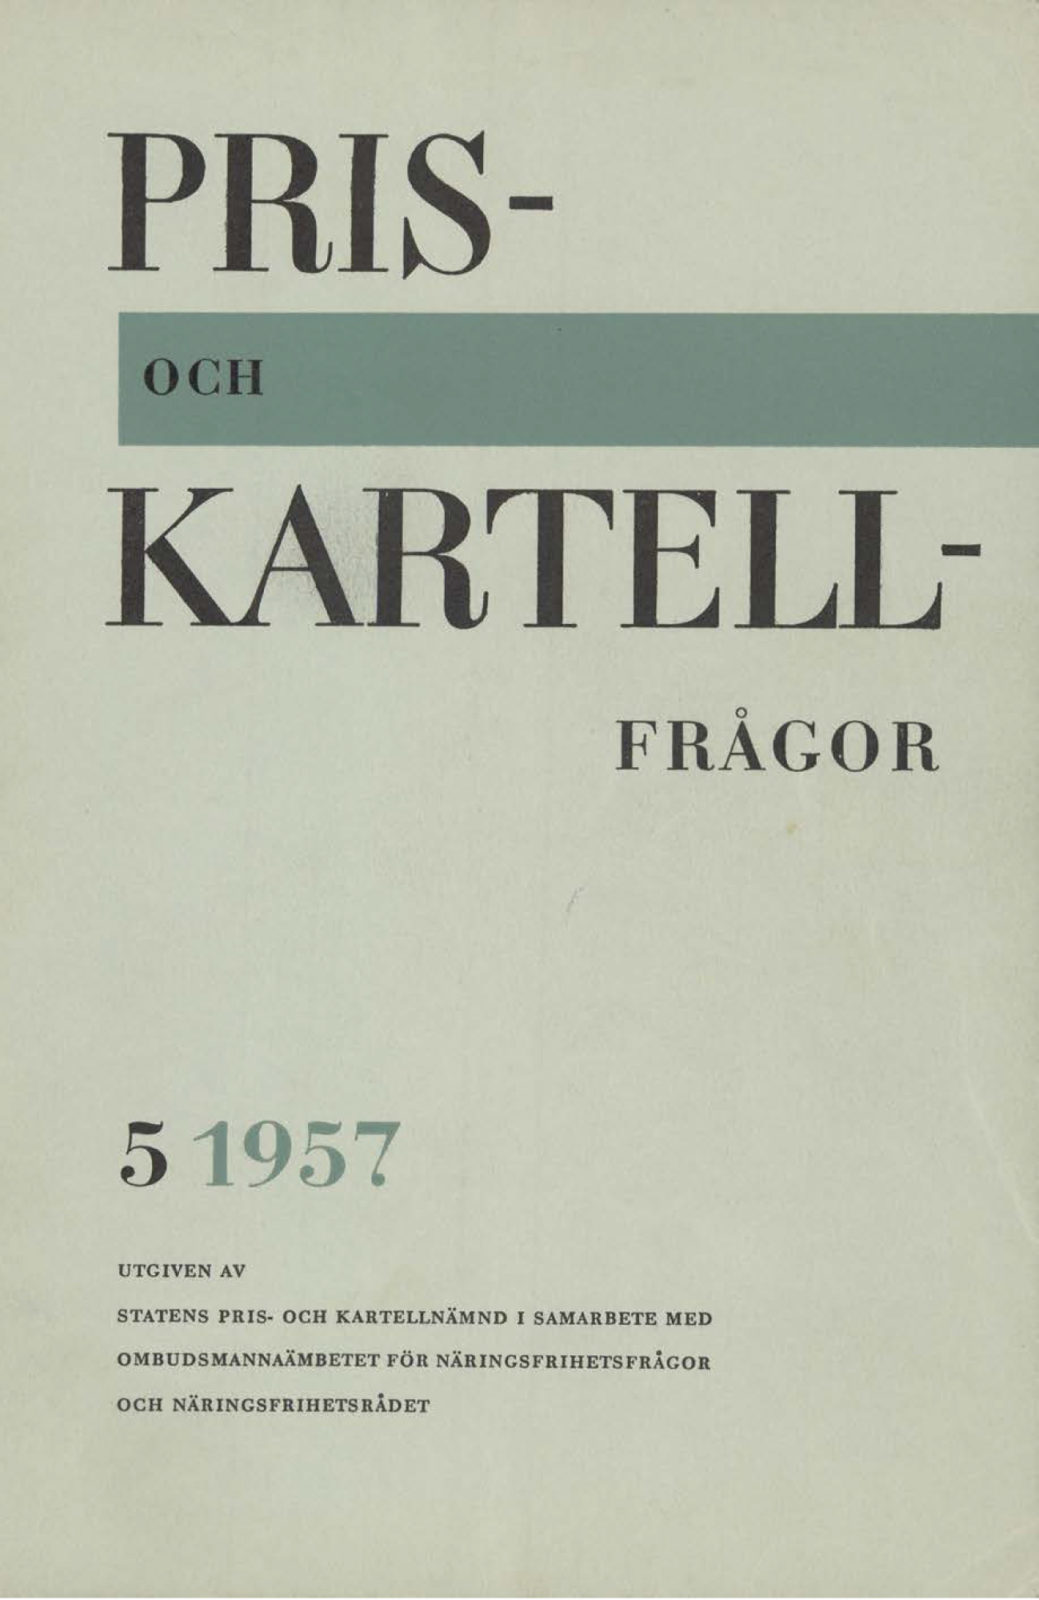 Broschyr med omslagstexten Pris- och kartellfrågor no. 5, 1957.